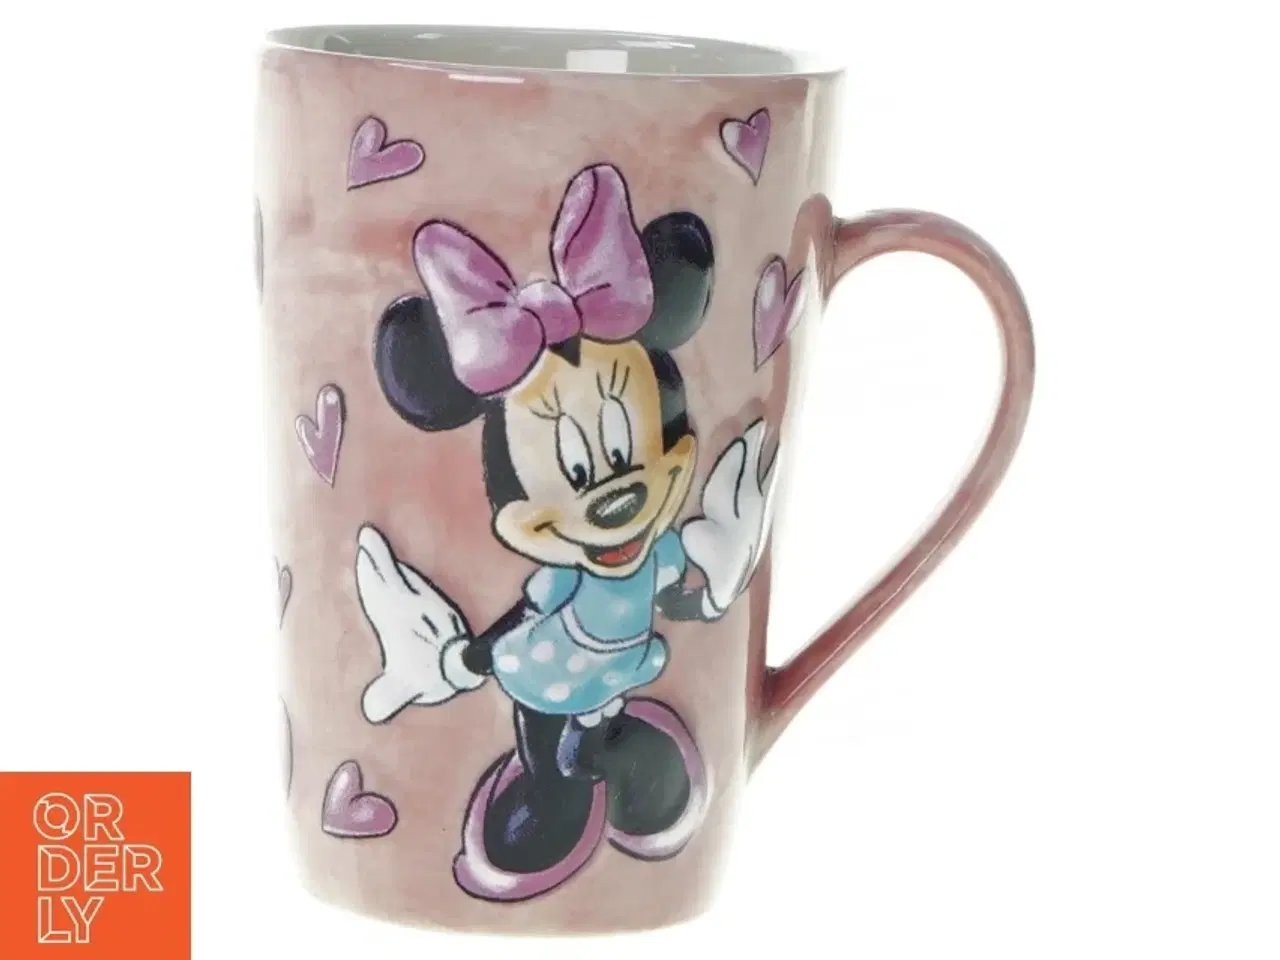 Billede 1 - Krus med Minnie Mouse fra Disney (str. 13 m)